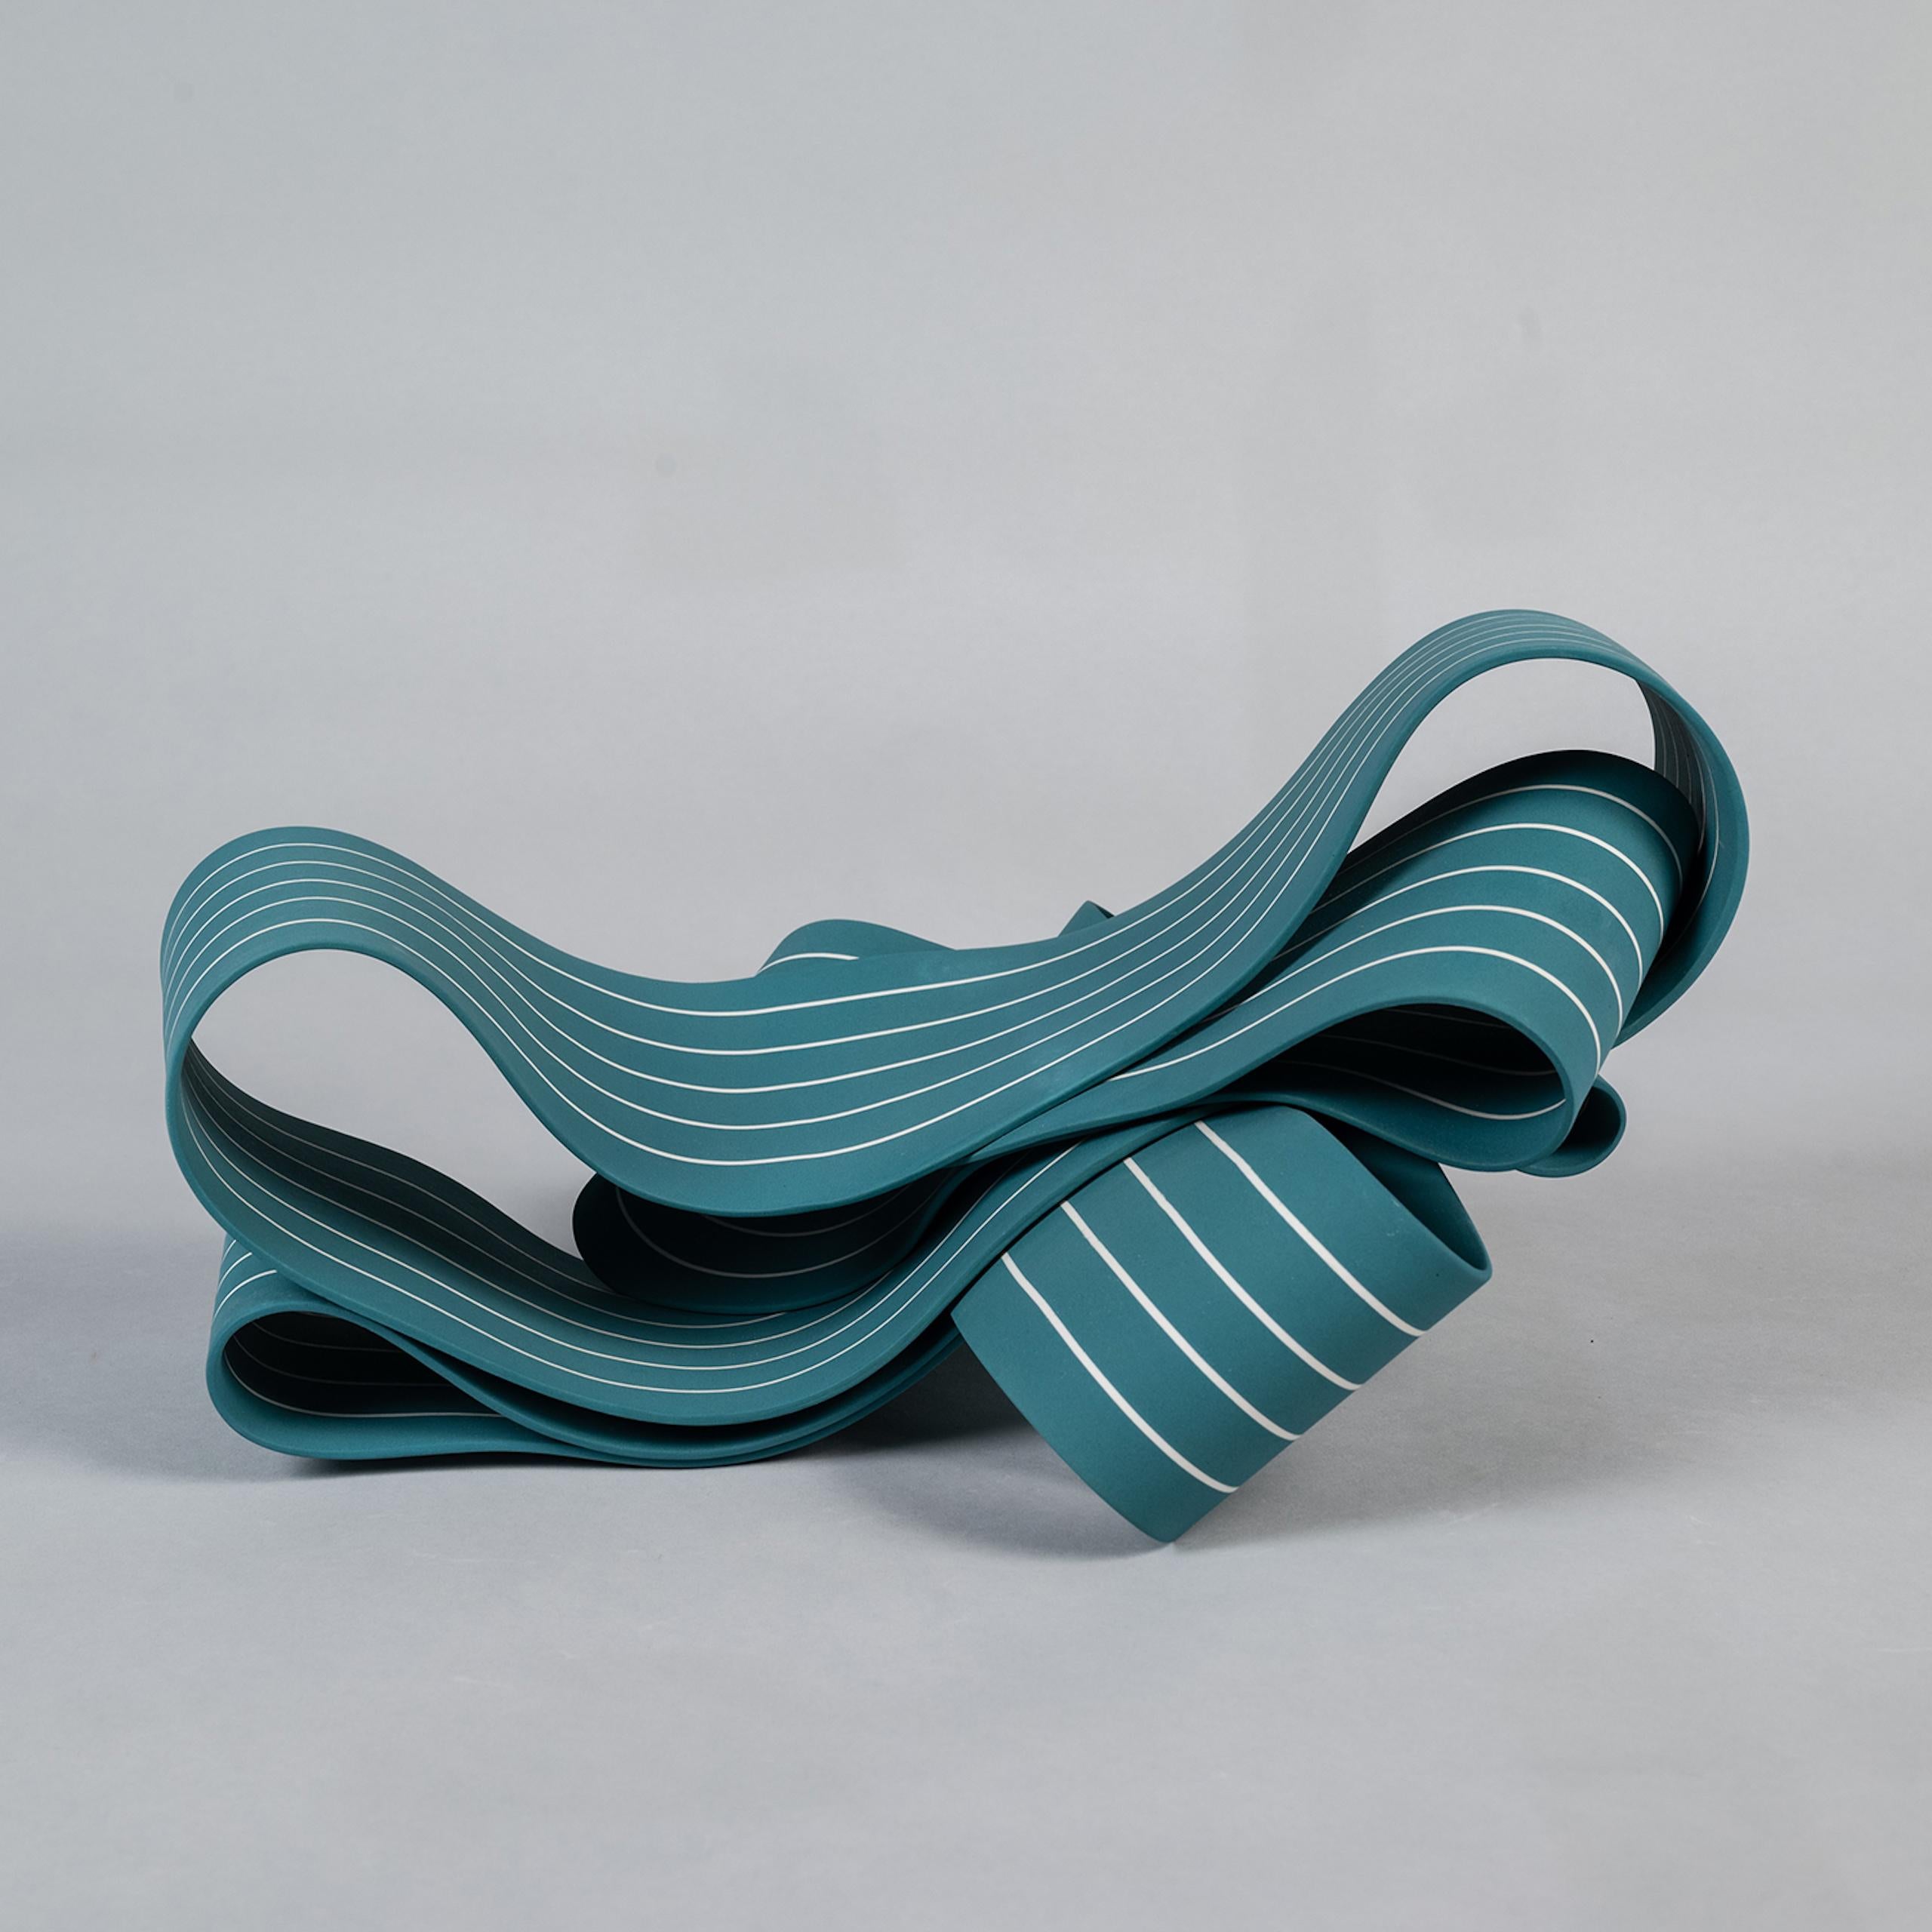 Entrapped 2 by Simcha Even-Chen - Porcelain sculpture, blue, motion For Sale 1